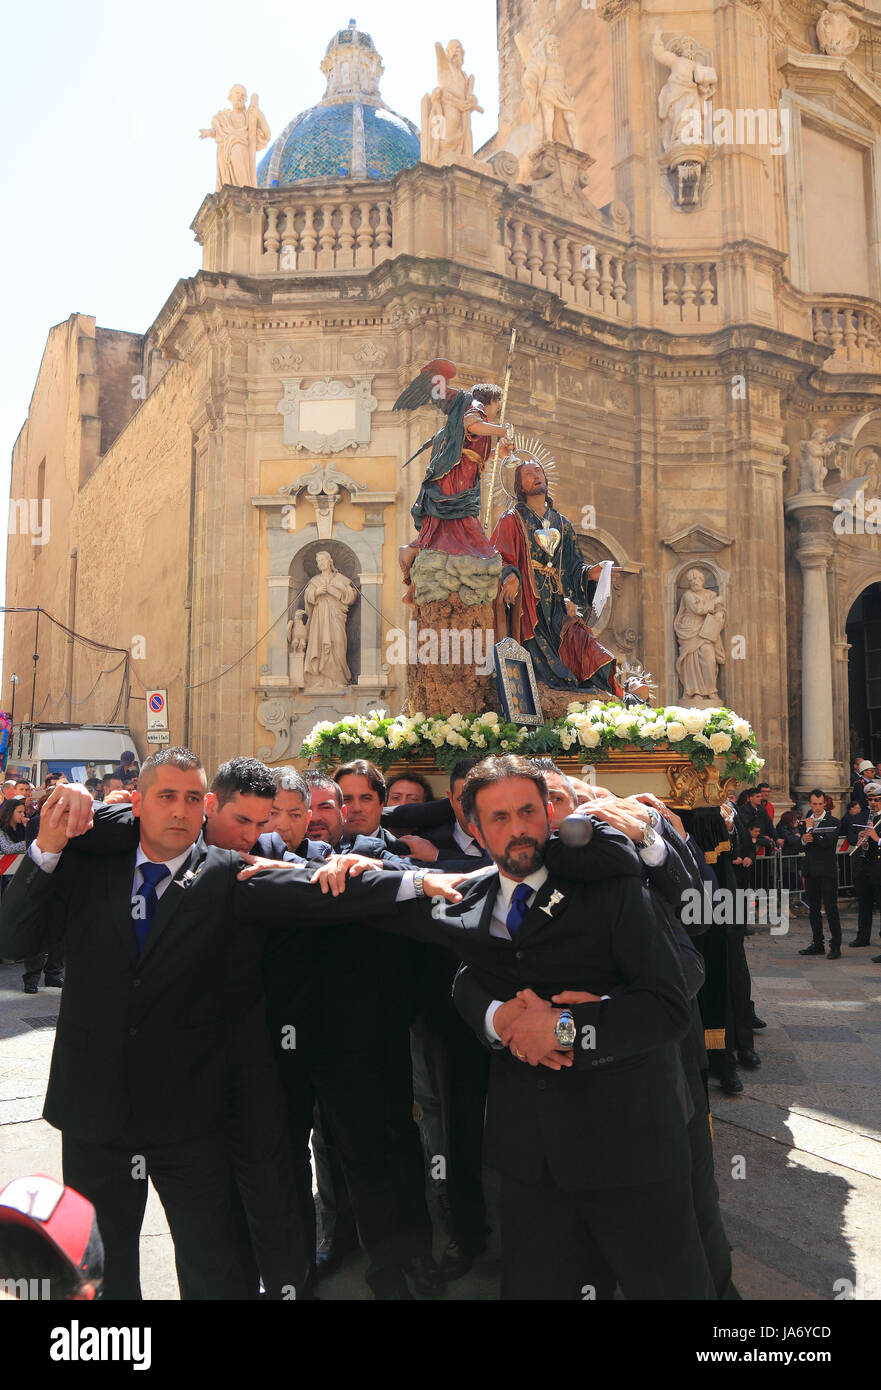 La sicilia trapani, Buon Venerdì misteriosa processione La Processione dei Misteri, muovendo con i misteri attraverso la città vecchia Foto Stock